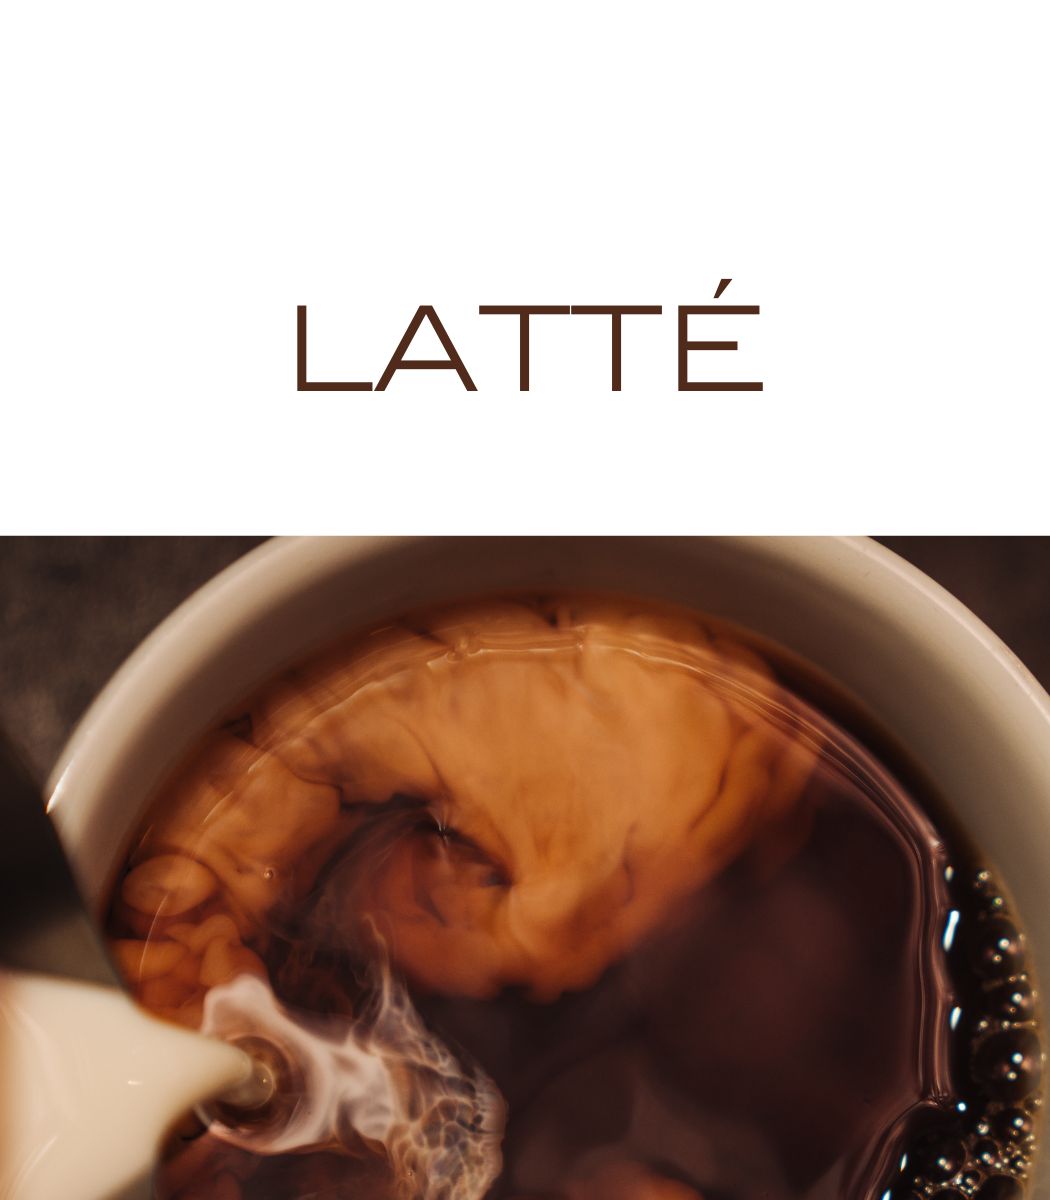 CAFE LATTE